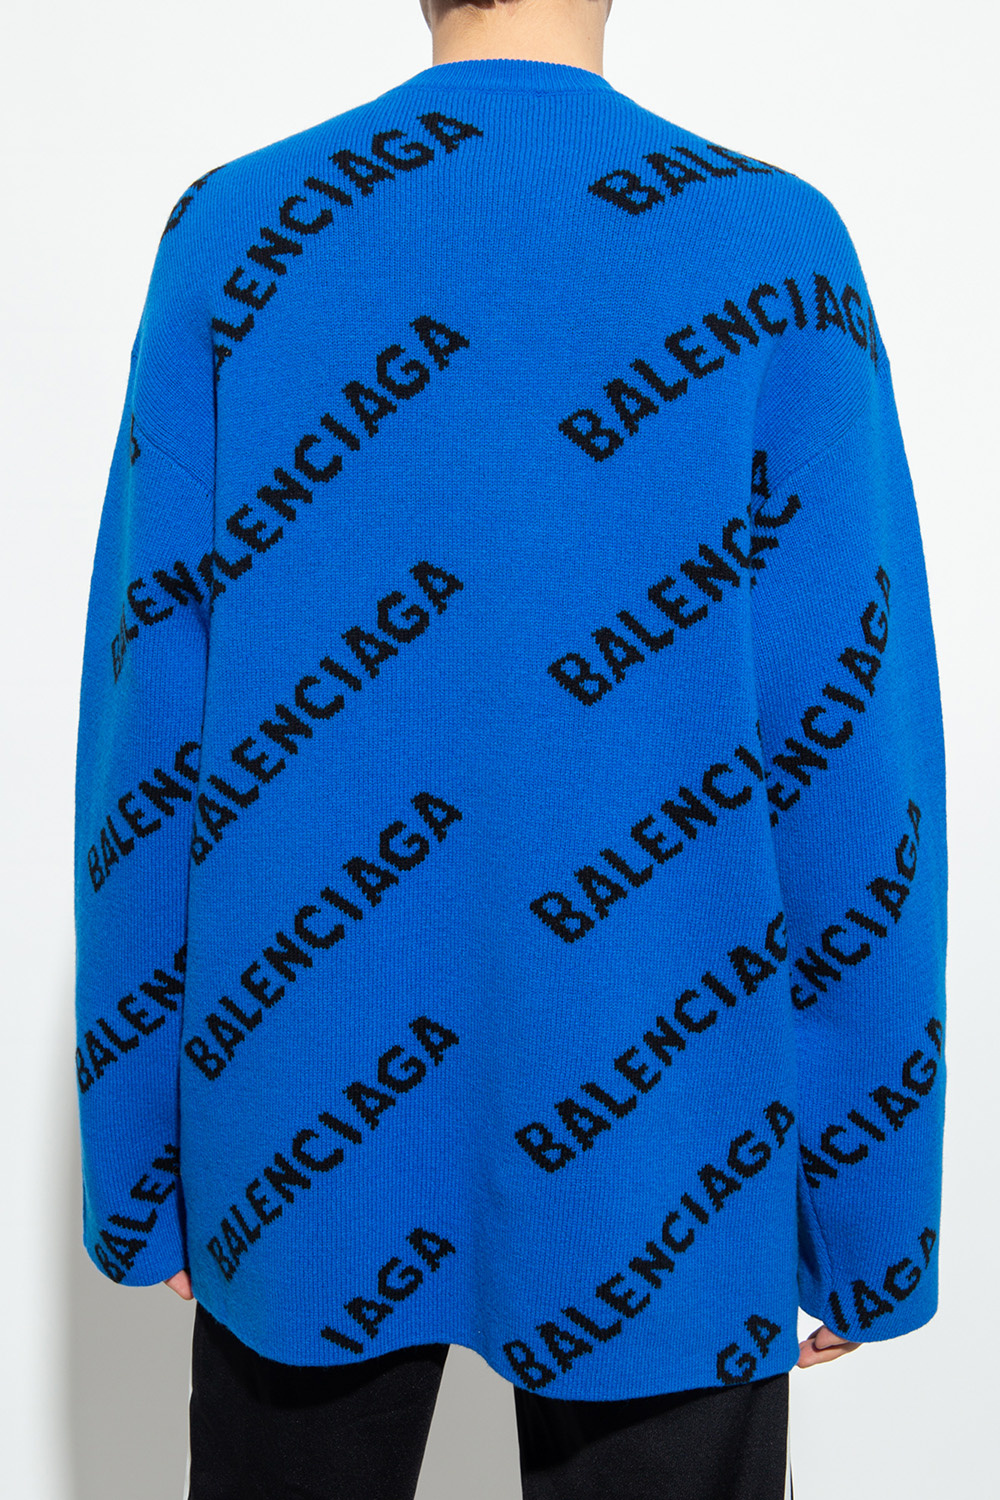 Balenciaga edge sweater with logo